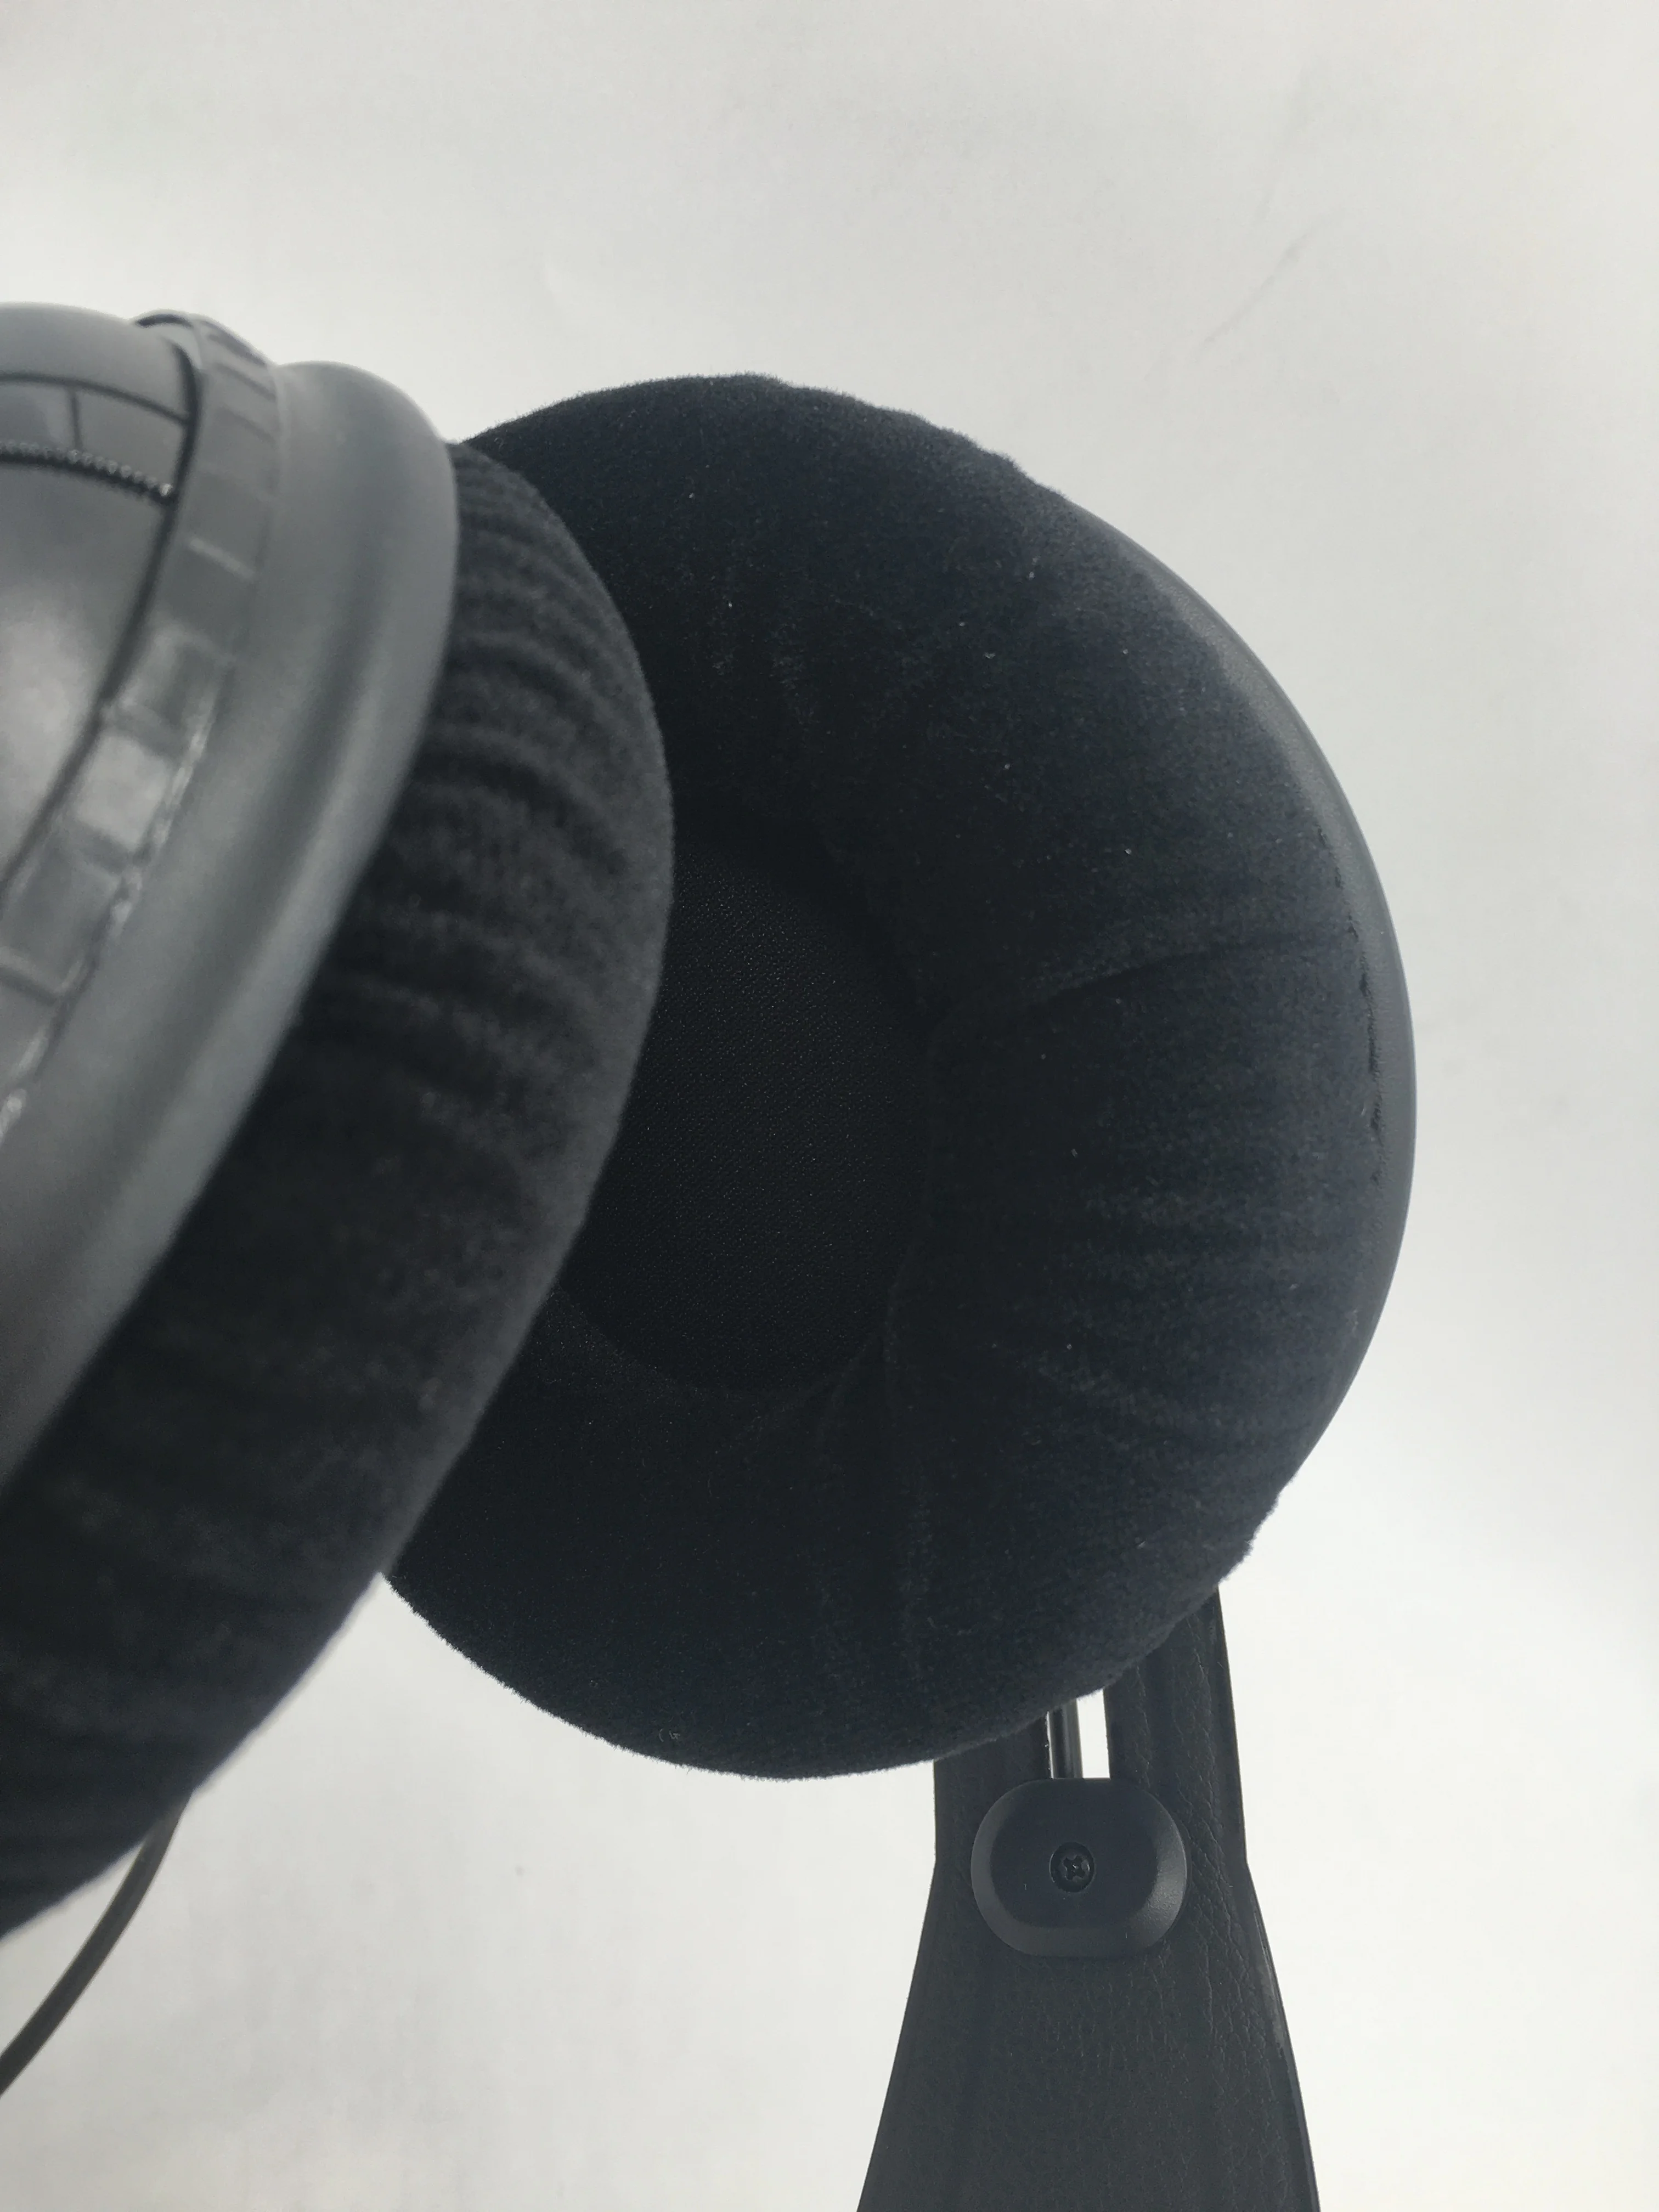 SAMSONAS SR950 profesionalus studija nuoroda stebėti ausinės-dinaminės ausinės uždaro ausies dizainas